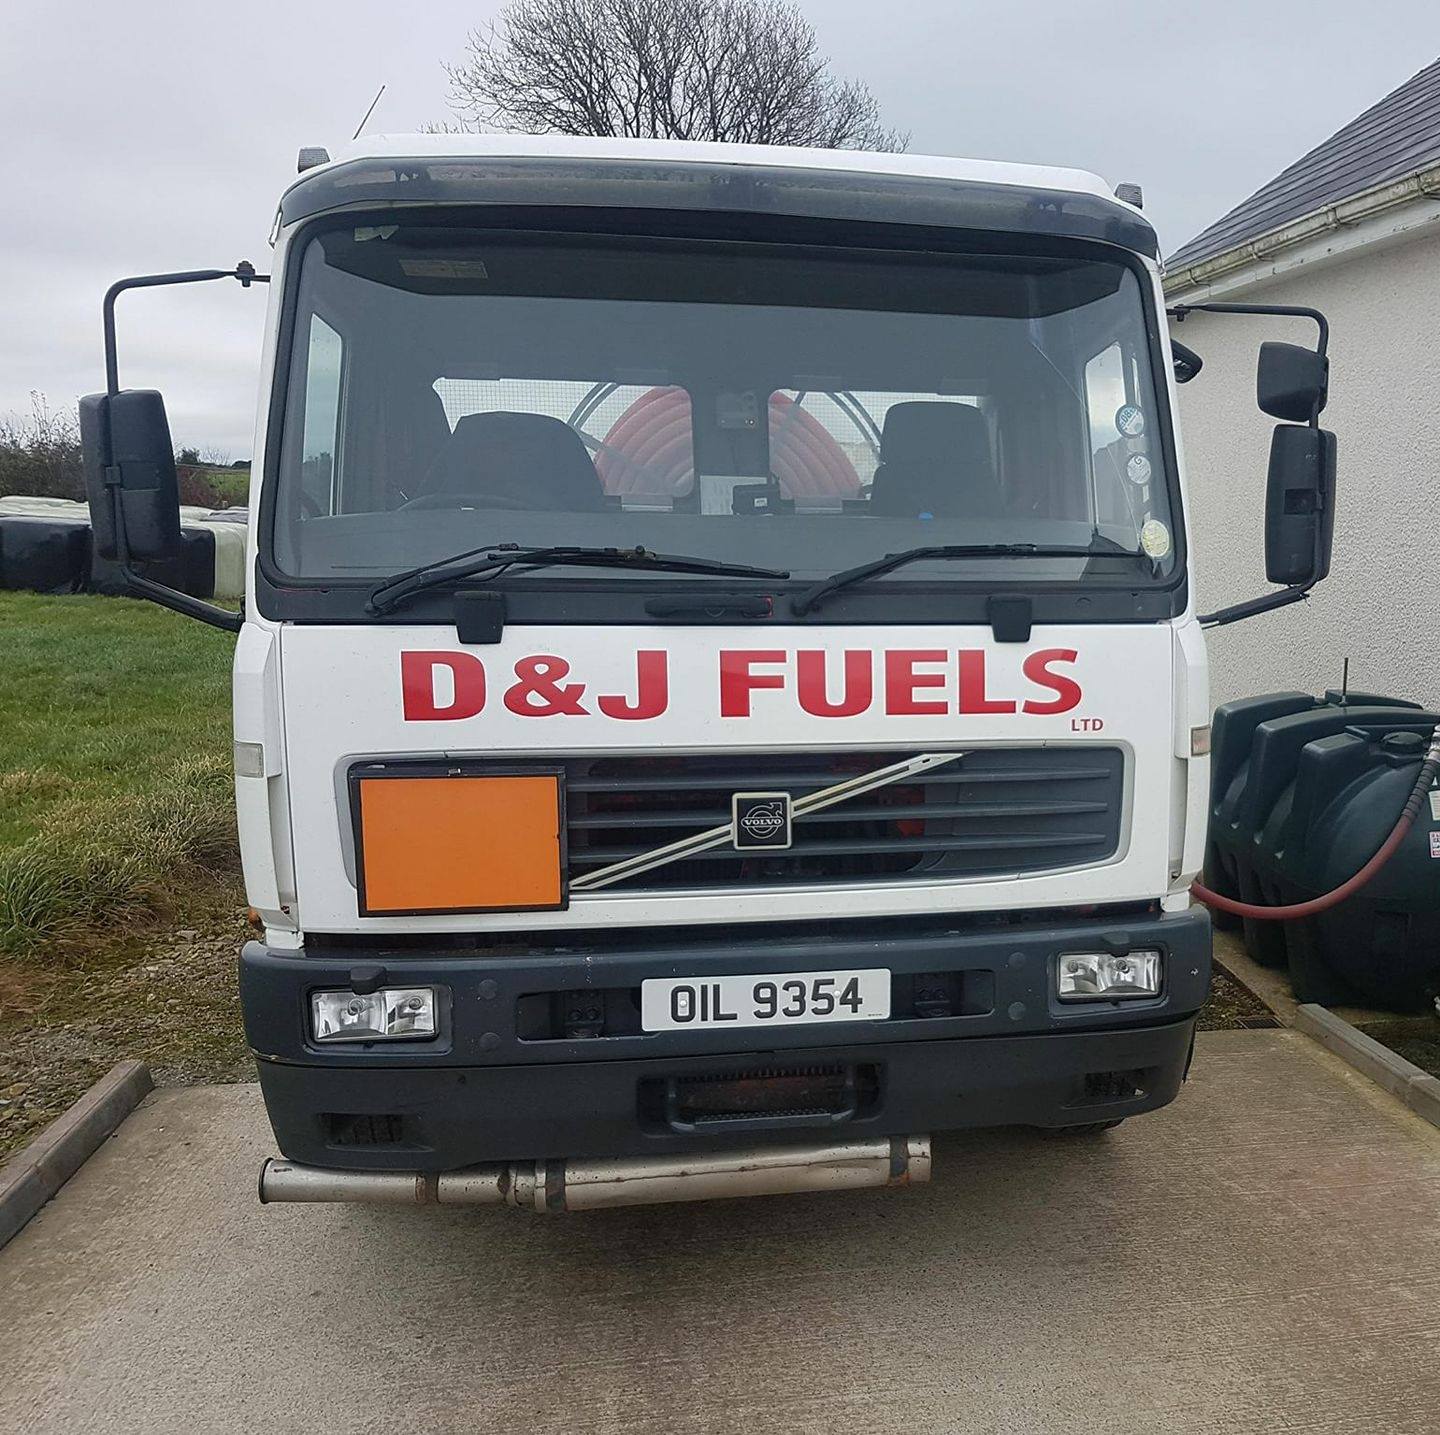 D & J Fuels